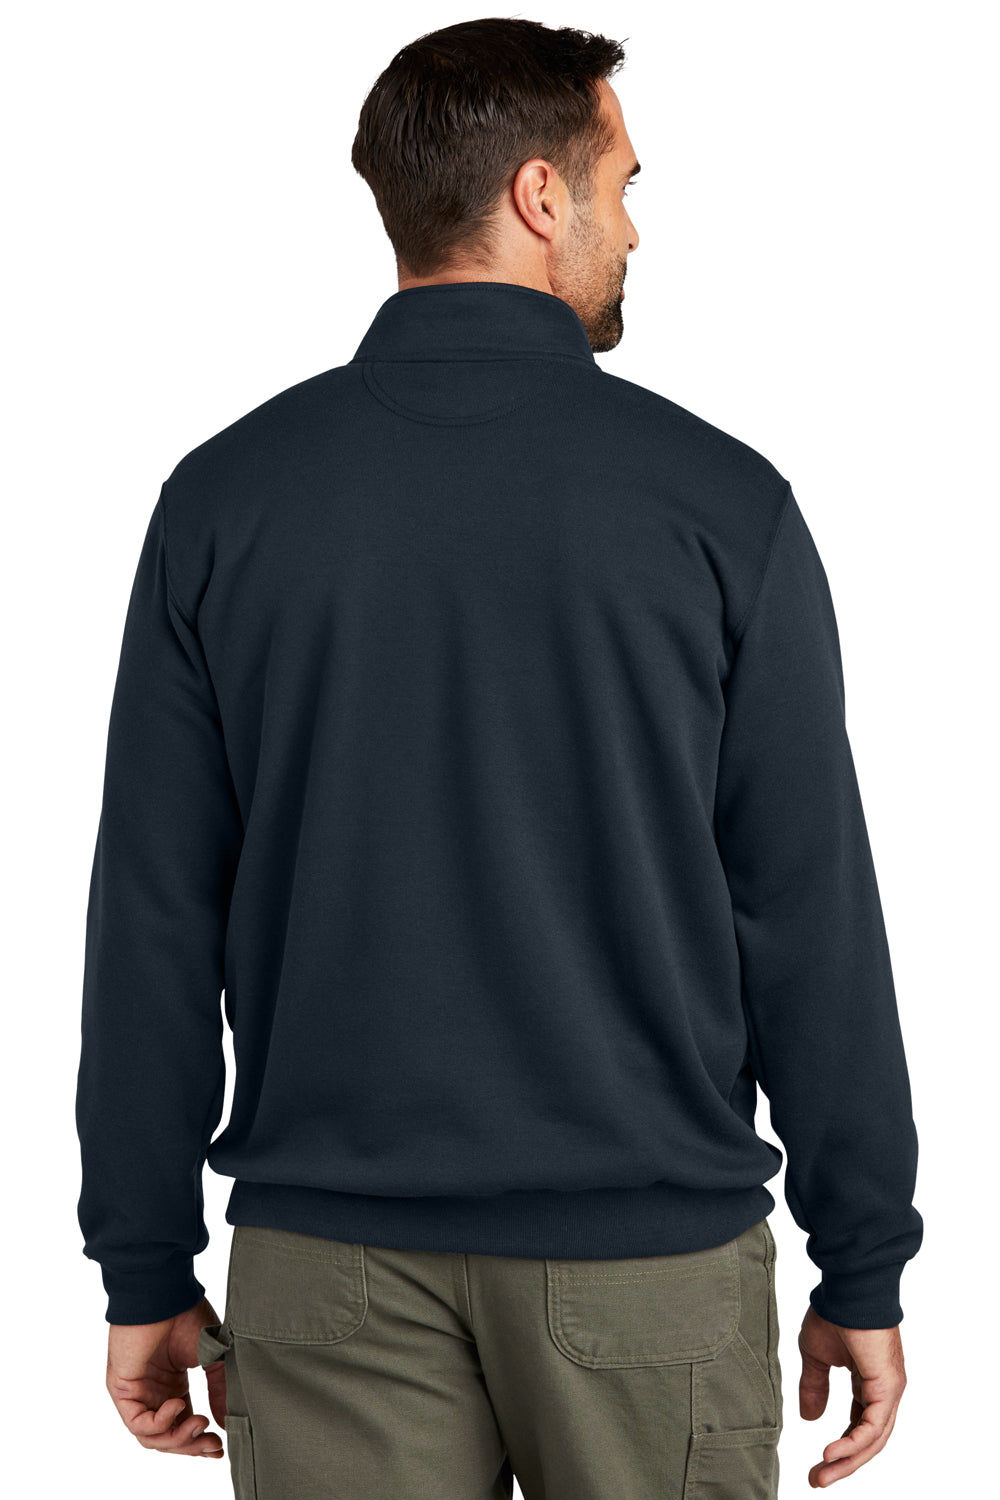 Carhartt CT105294 Mens 1/4 Zip Sweatshirt New Navy Blue Model Back